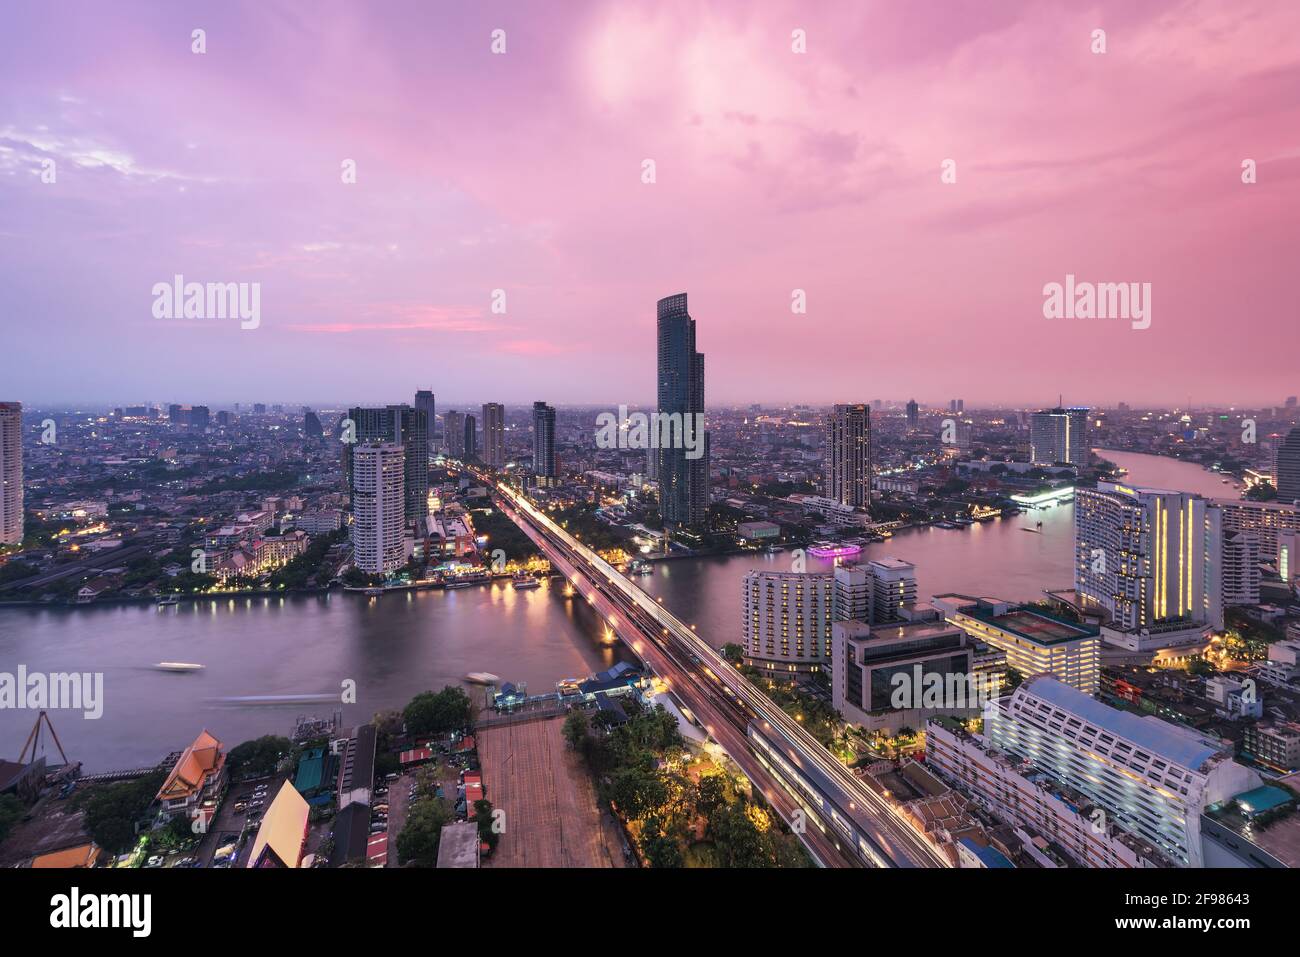 Image of Bangkok City Skyline, Thailand Stock Photo